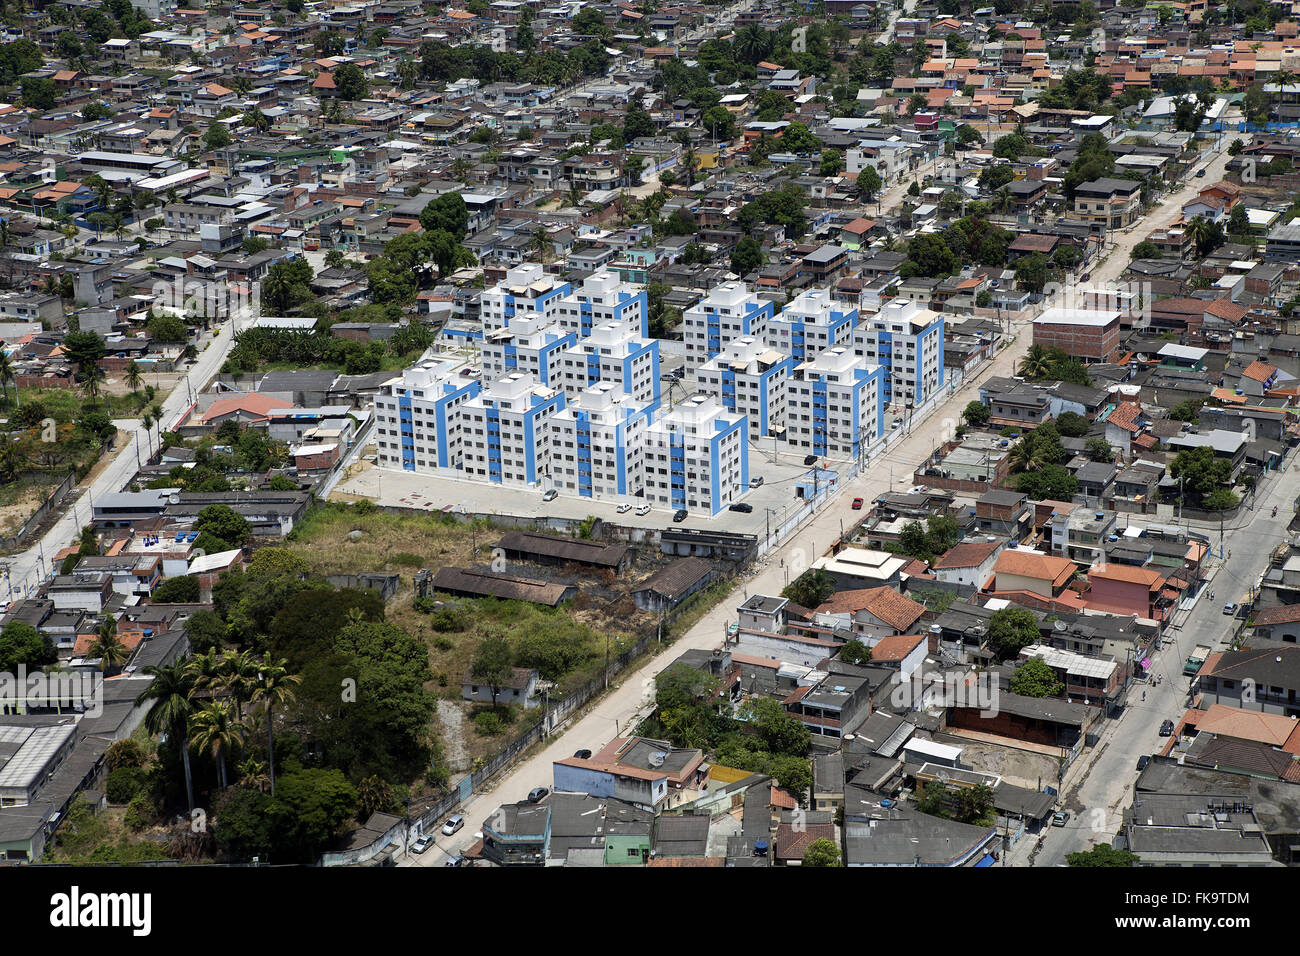 Vista aerea di case specialmente nelle sale di soggiorno e strade sterrate Foto Stock